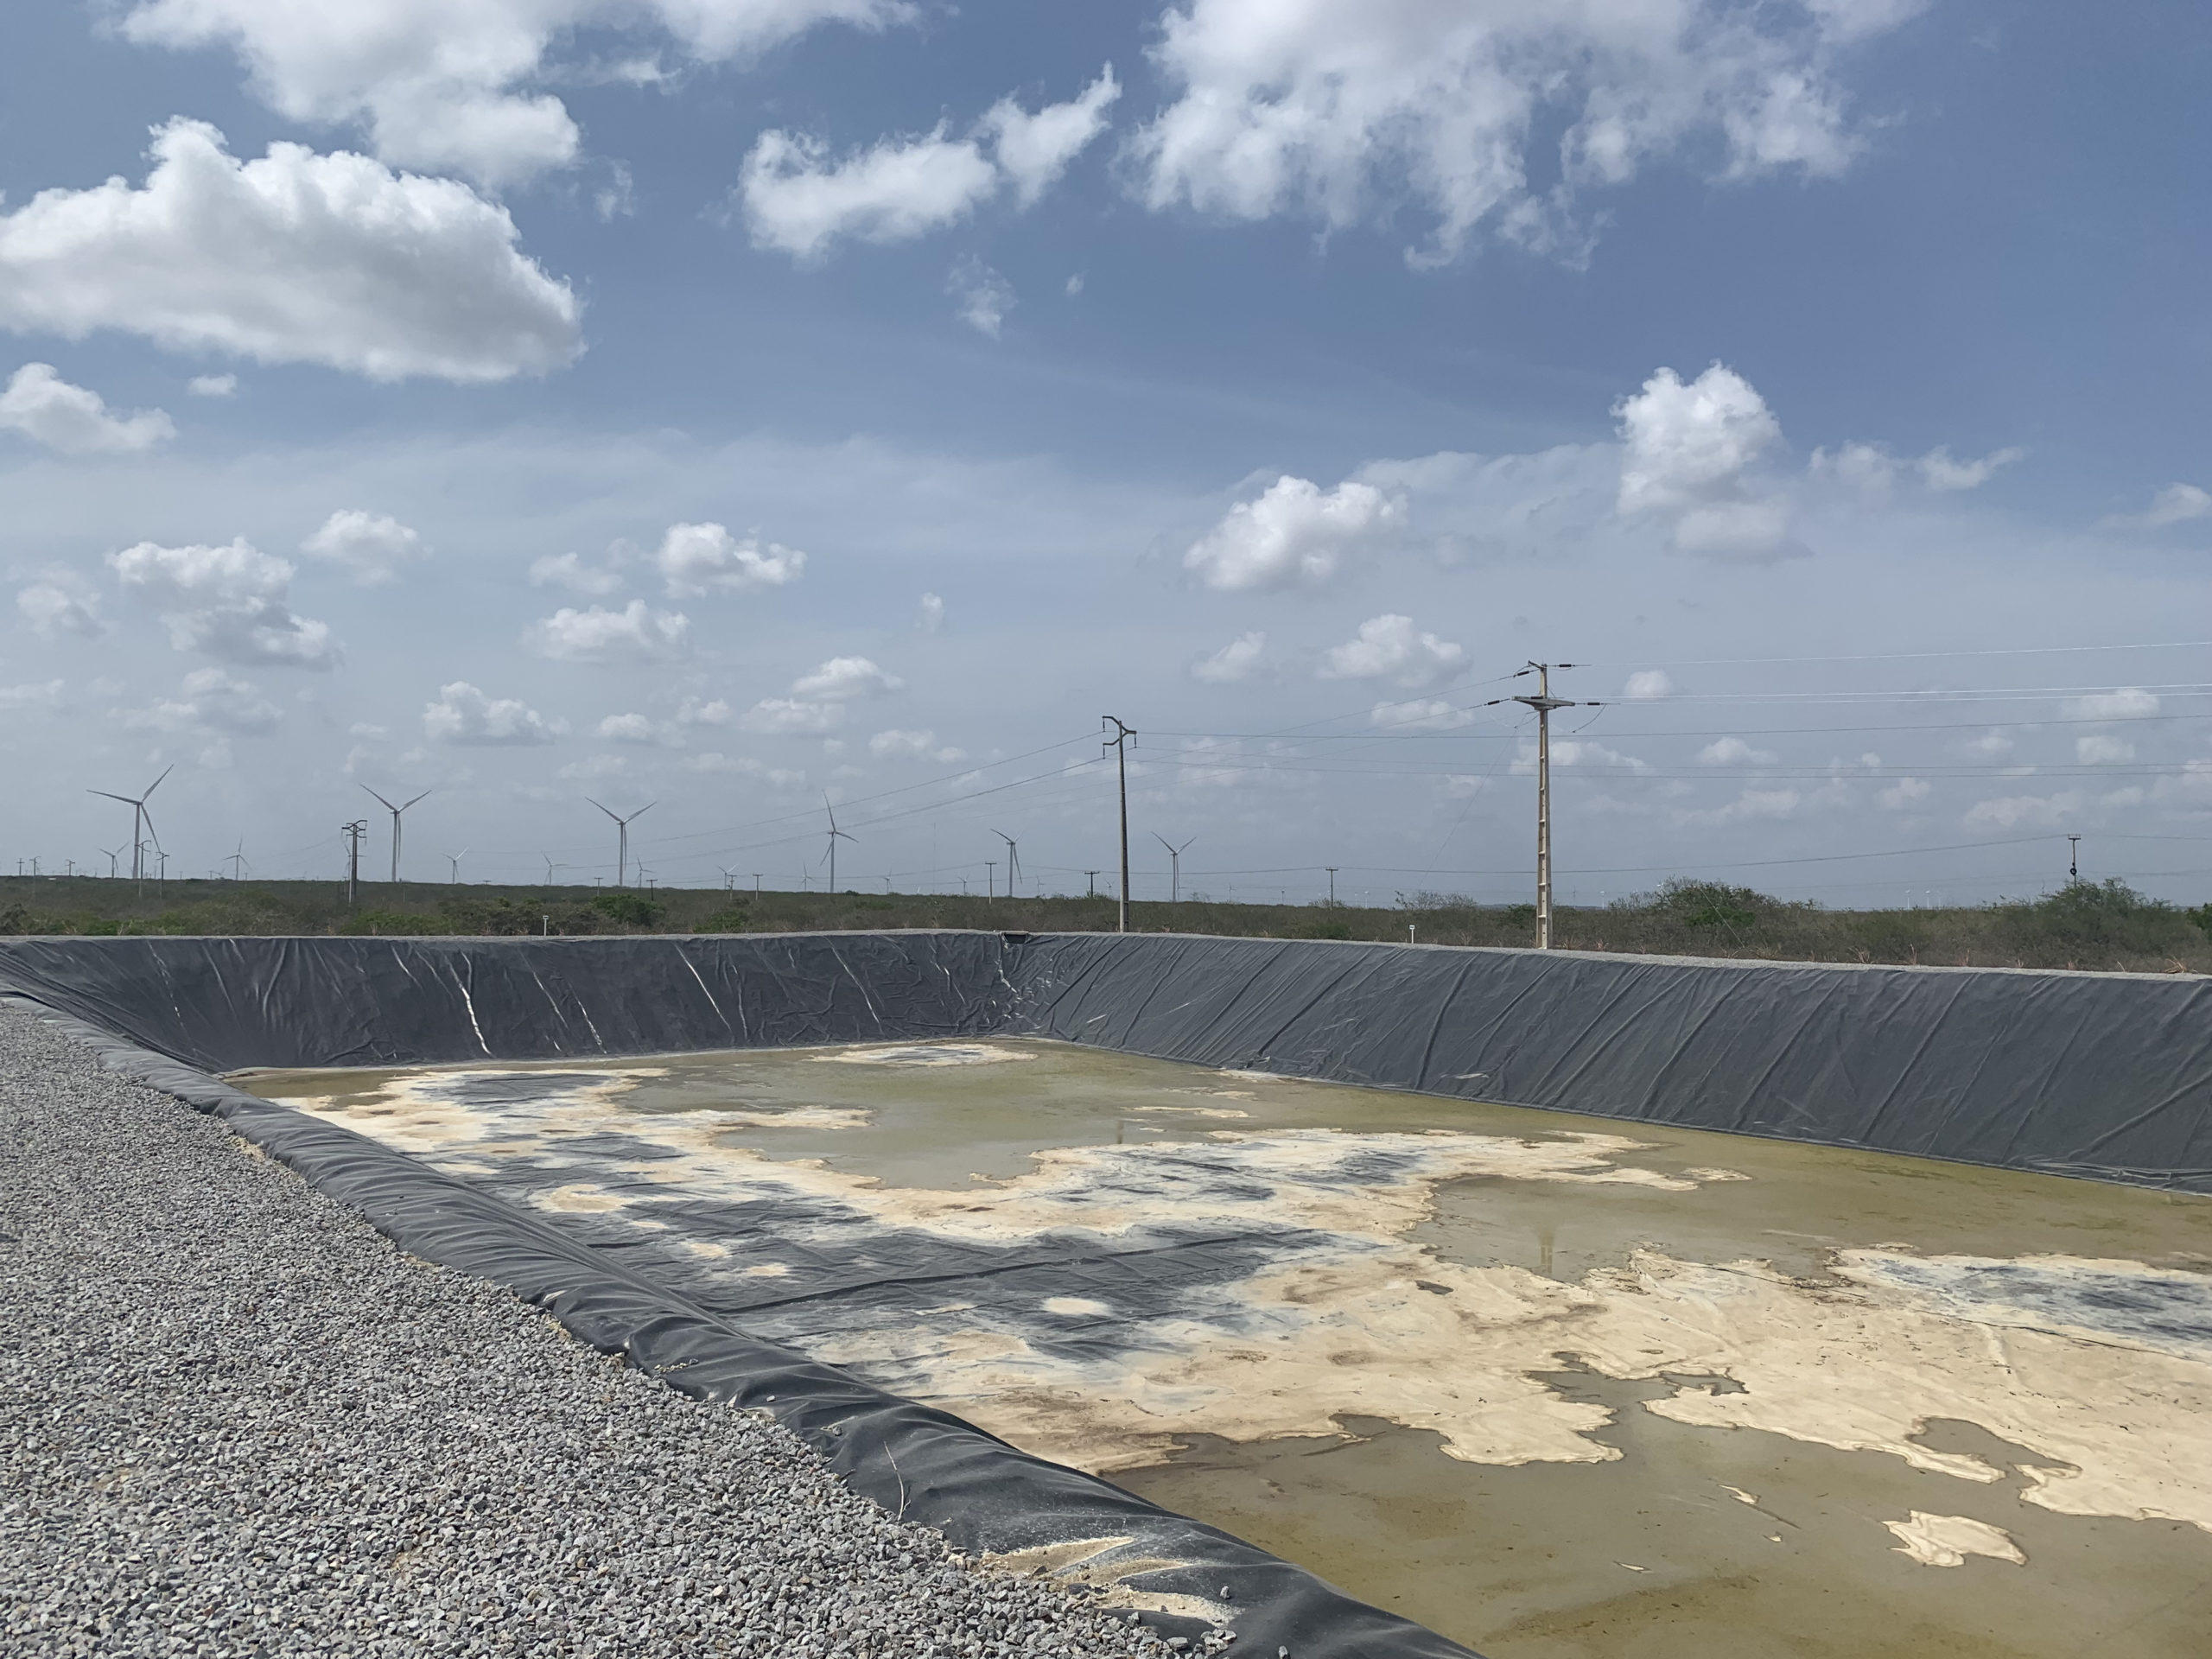 Dessalinização com energia solar beneficiará comunidade rural no Rio Grande do Norte. Na imagem: Concentração de rejeitos no sistema de dessalinização em João Câmara (RN) (Foto: Arquivo pessoal)